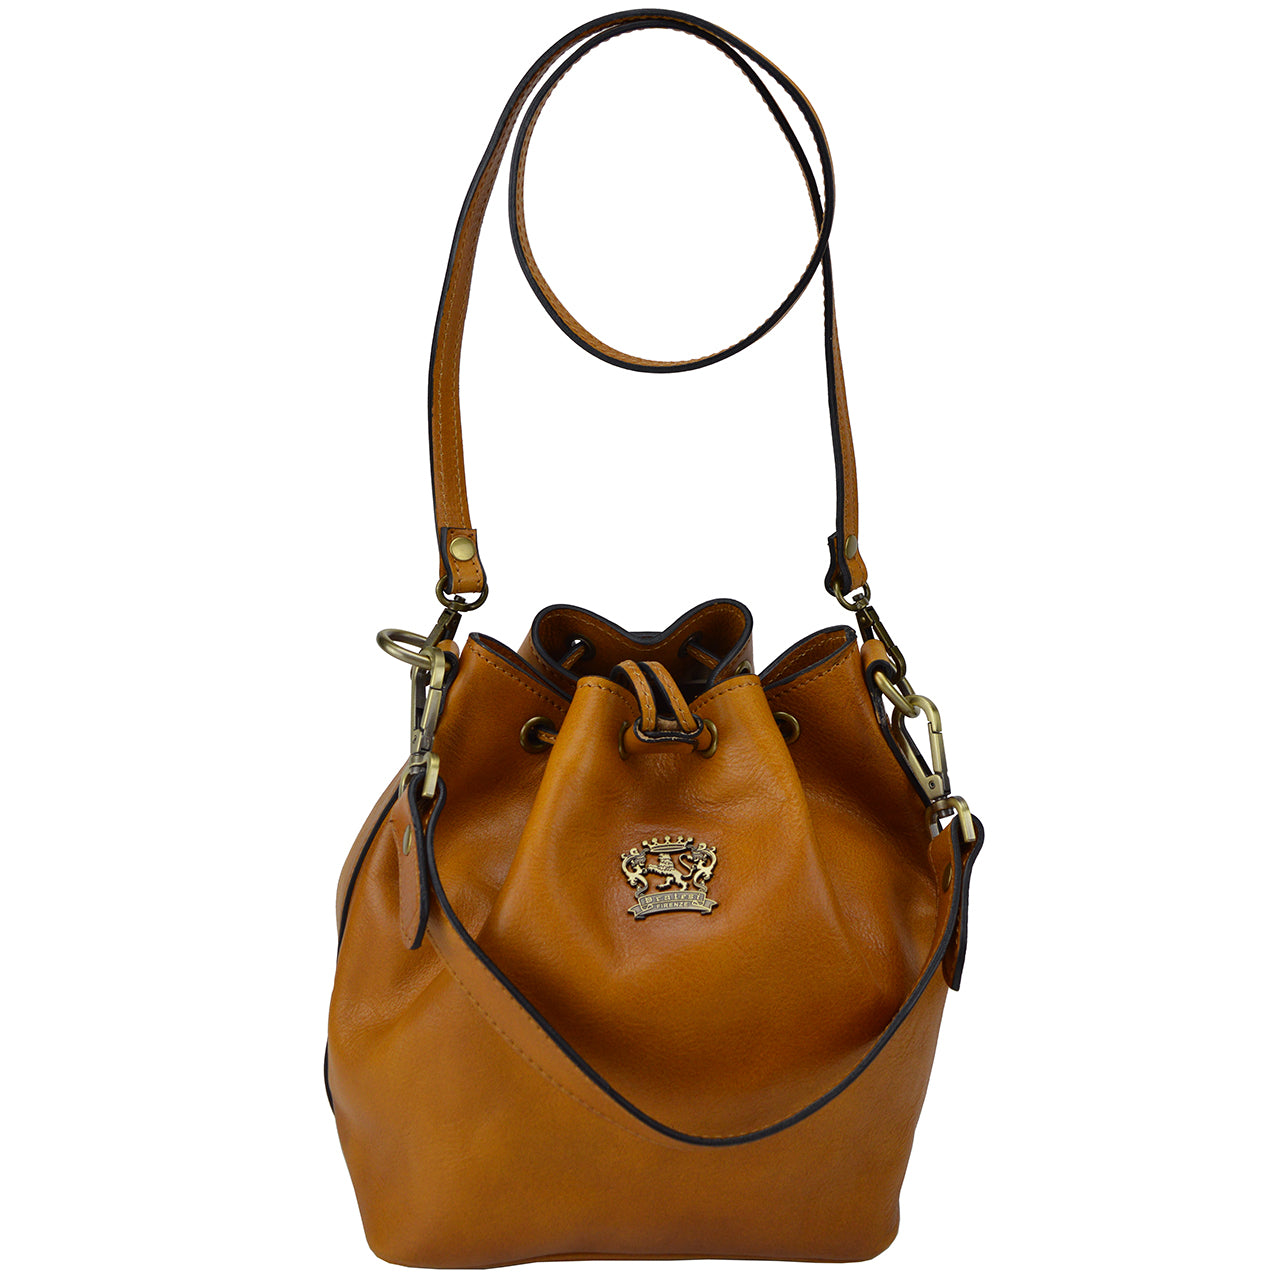 Pratesi Sorano Woman Bag in genuine Italian leather